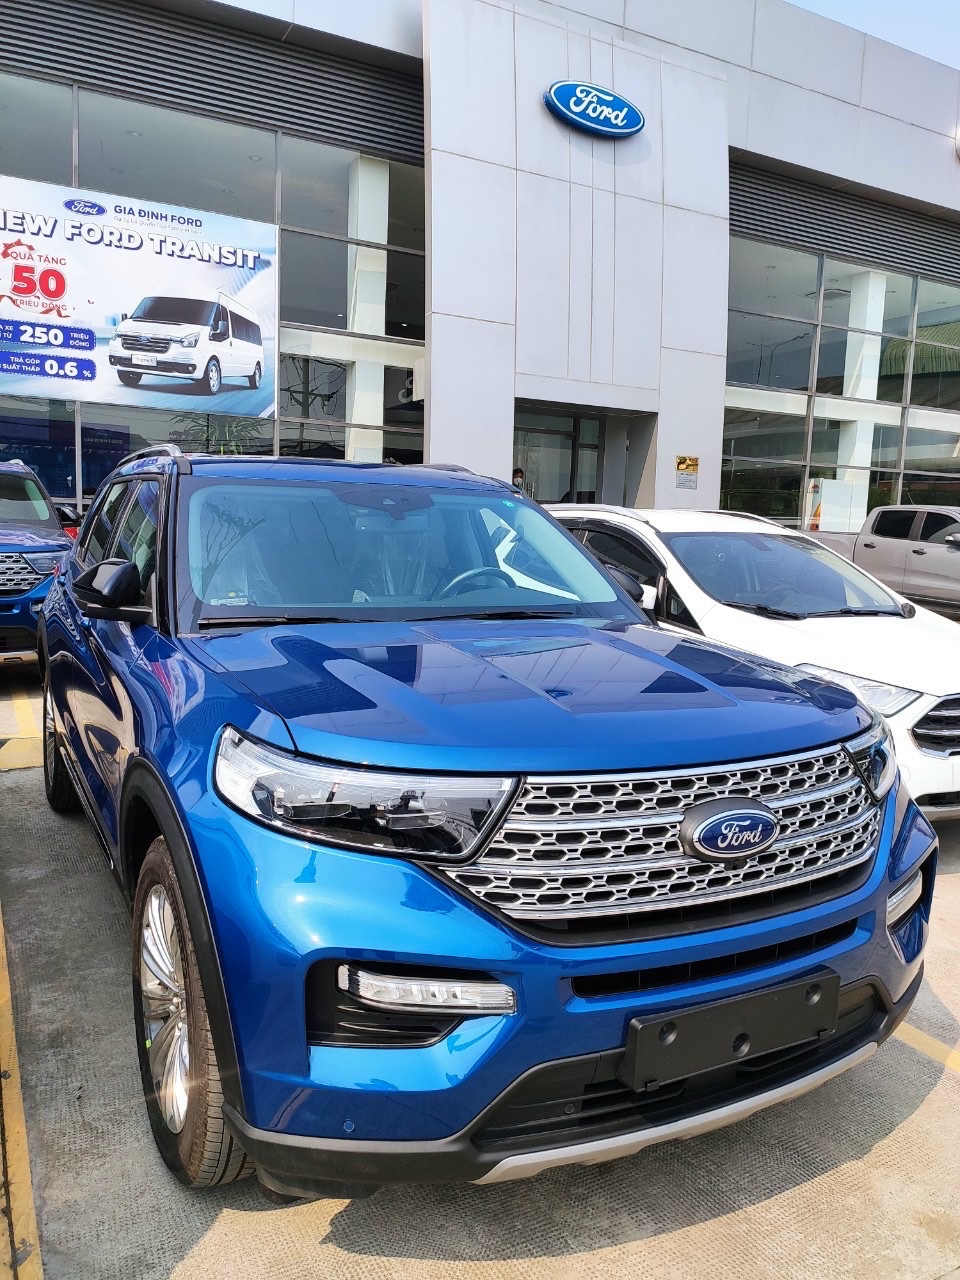 Xe Ford Explorer 2018 nhập Mỹ tại Việt Nam ? Giá bán Explorer 2018 mới nhất  - City Ford | Đại Lý Xe Ôtô Ford Giá tốt nhất tại Việt Nam